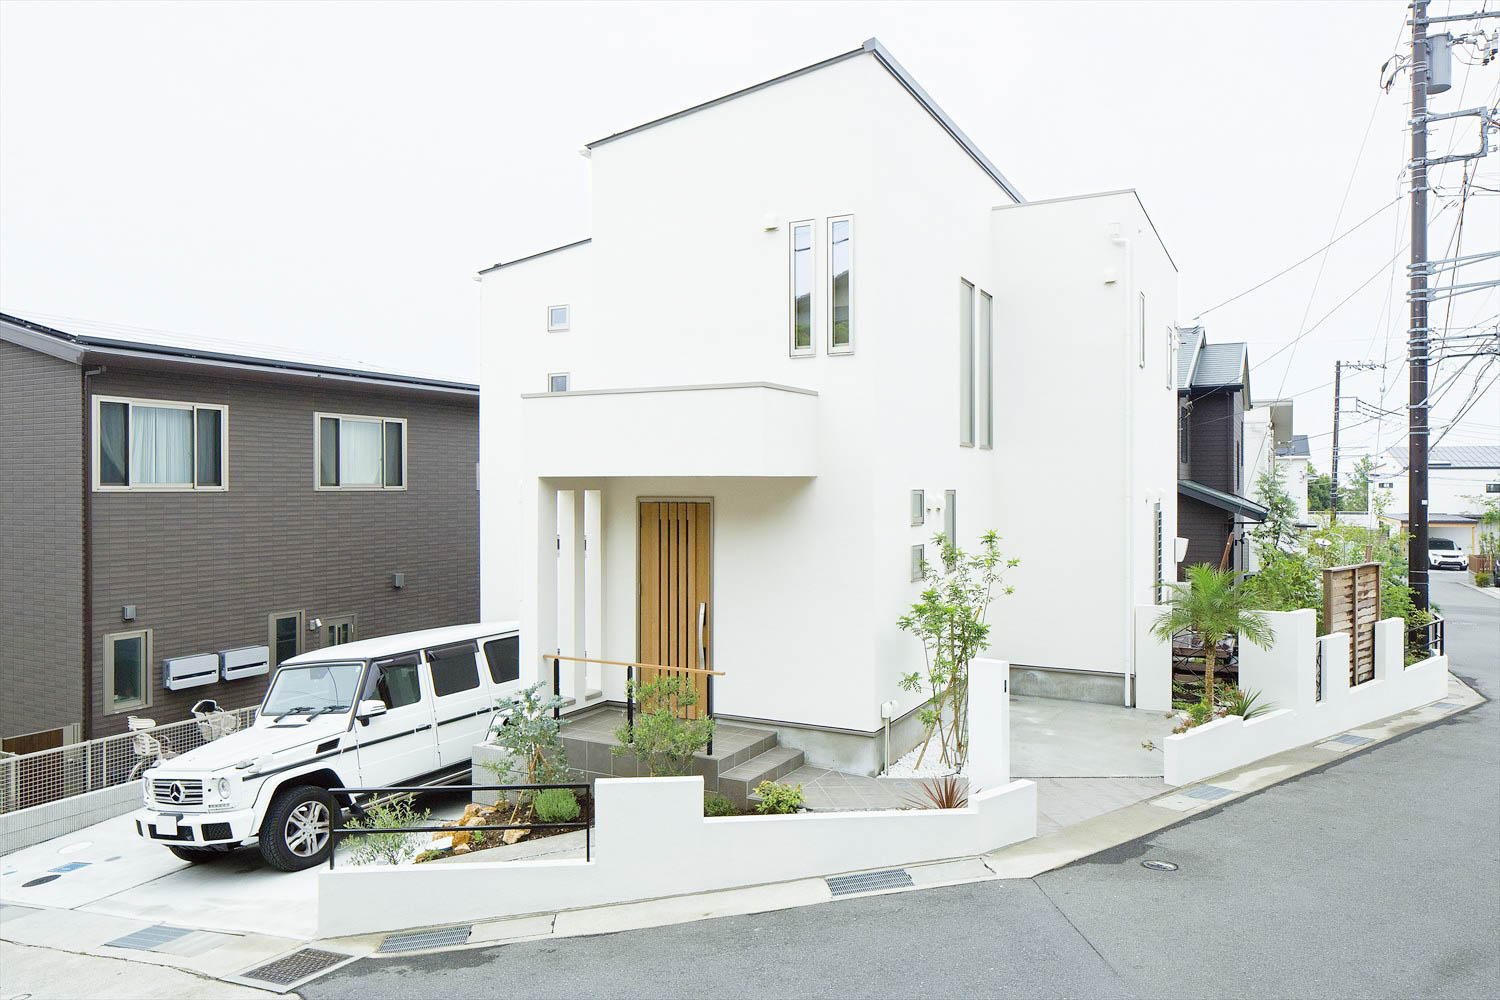 北向きの家やめた方が良い メリットとデメリットとは 神奈川で注文住宅ならホームスタイリング